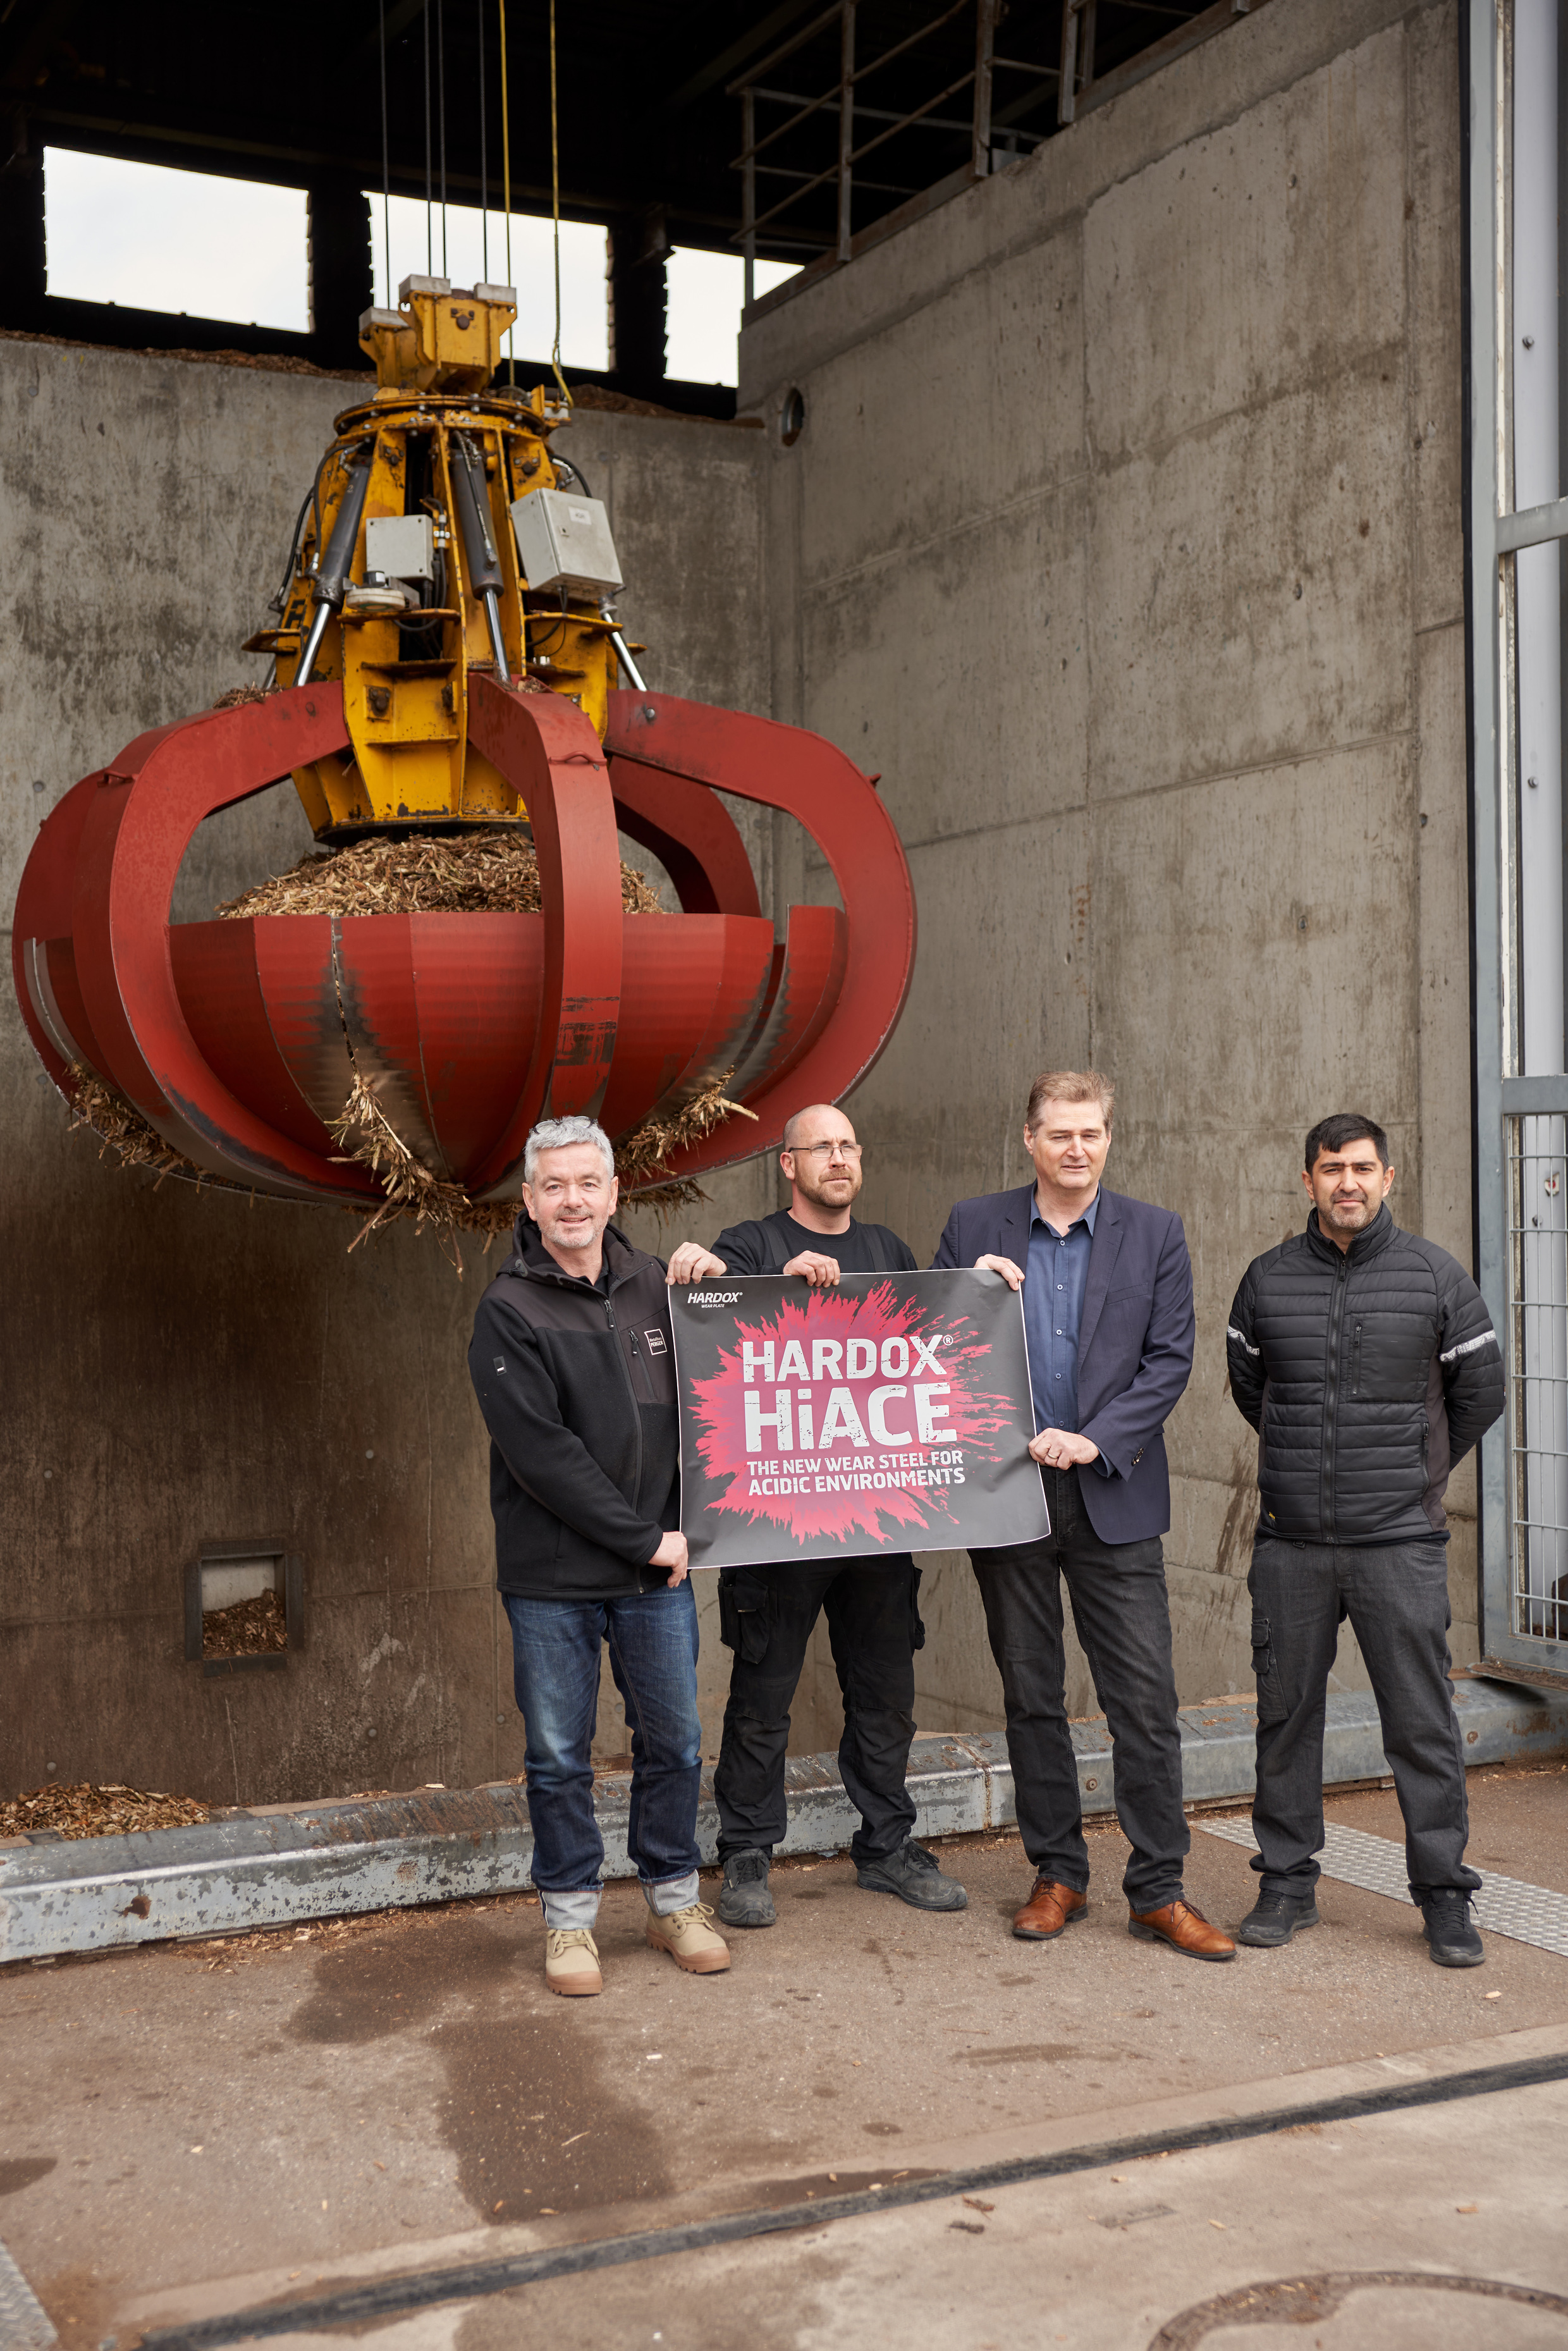 erger Metallbau regenerierte die verschleißbetroffenen Bereiche im Holzhackschnitzel-Heizkraftwerk Neckarsulm mit Hardox® HiAce.